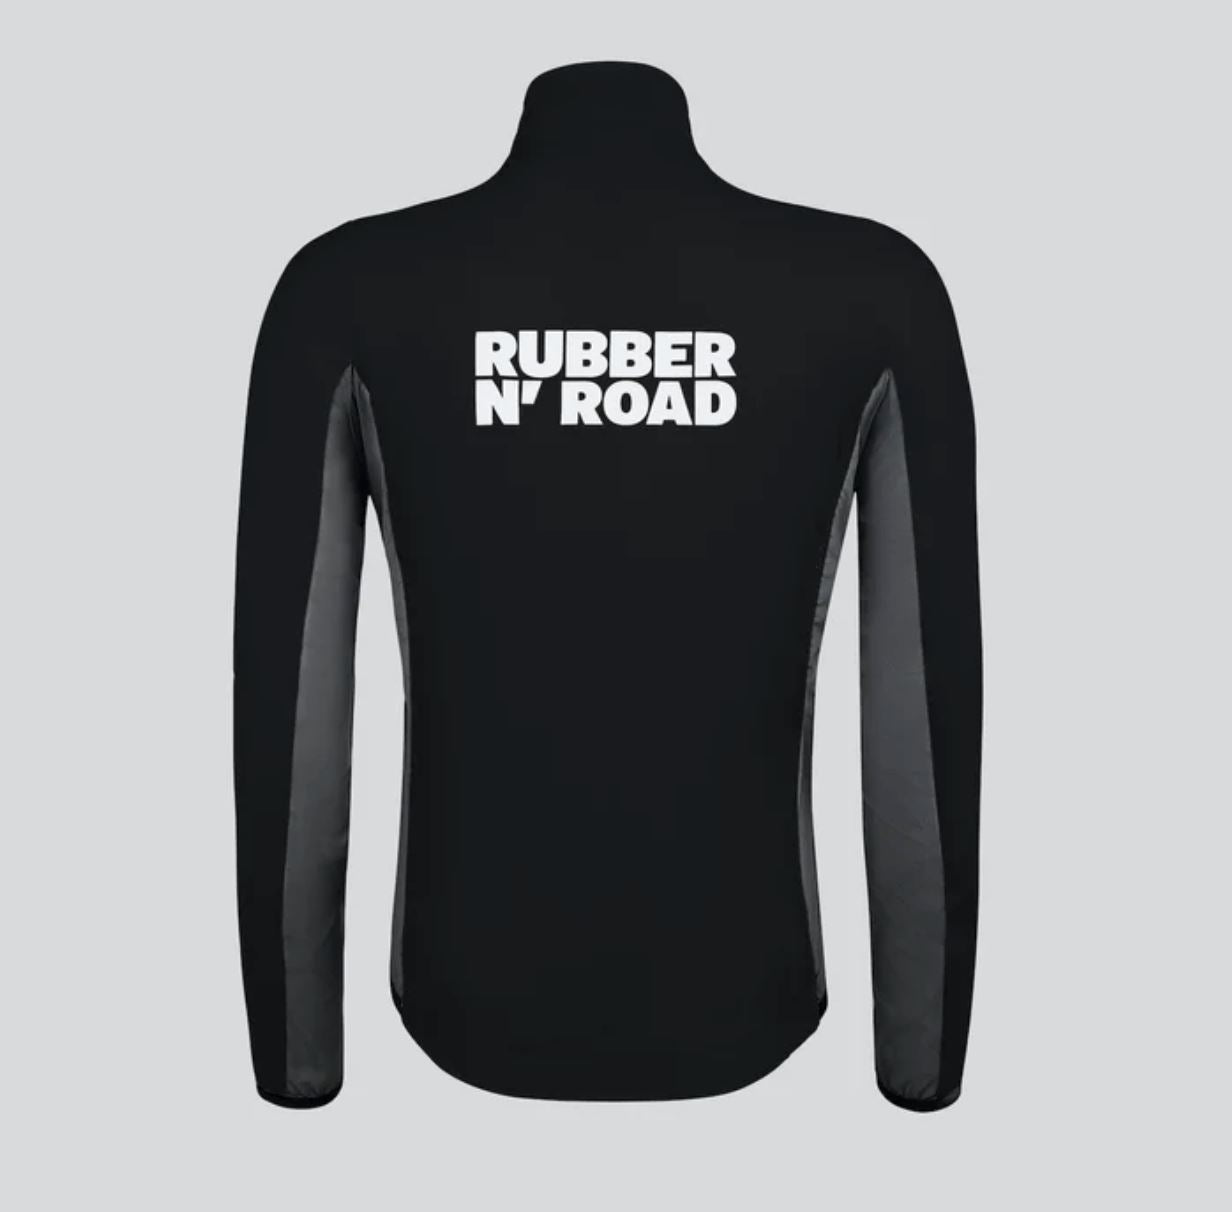 Rubber N' Road - Manteau Uniform Manteaux Rubber N' Road 